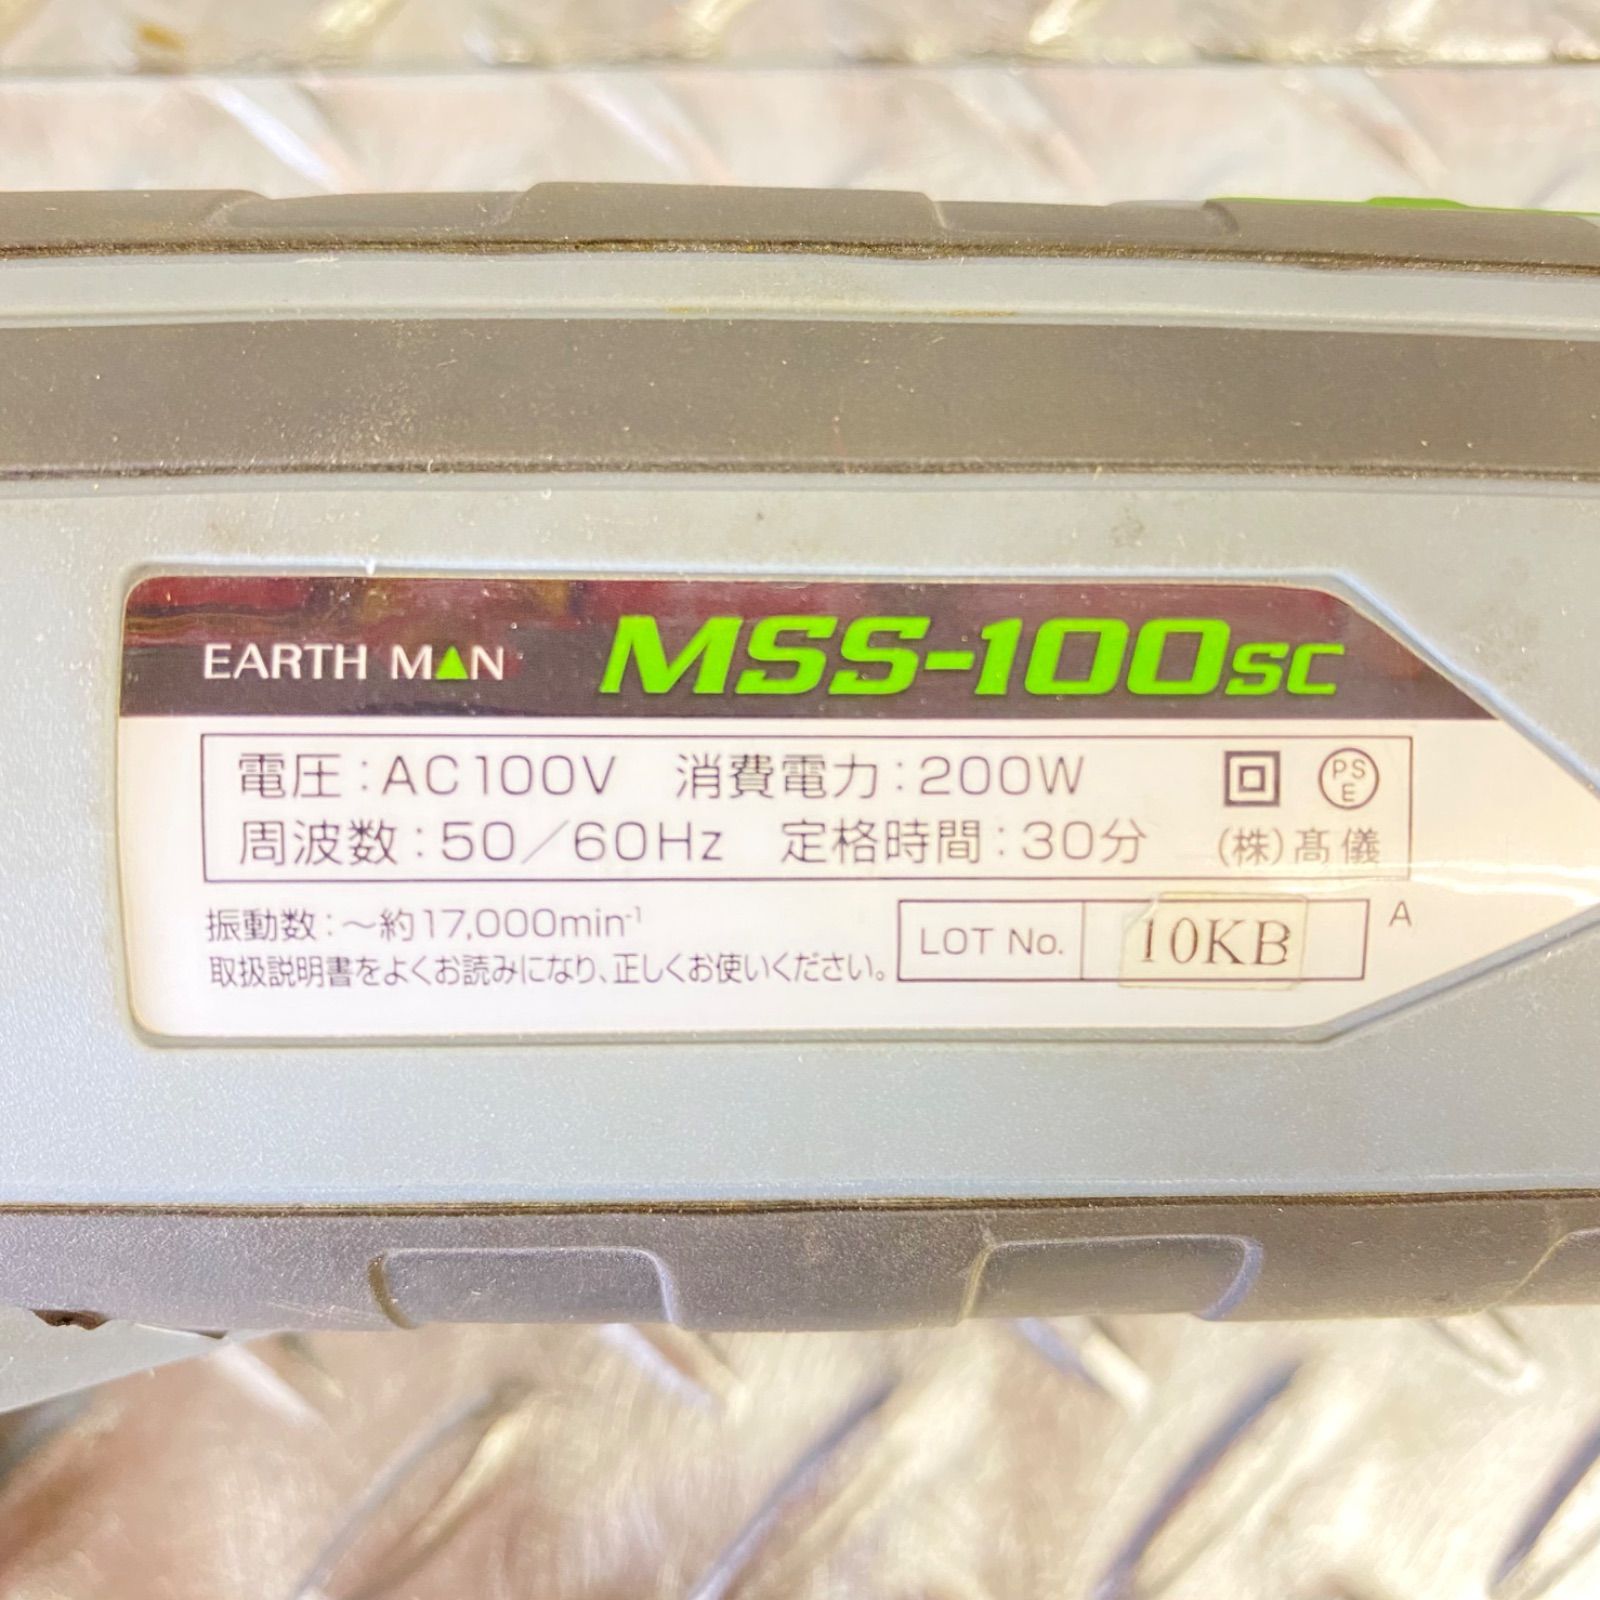 髙儀 EARTH MAN MSS–100SC マルチサンディングソー - メルカリ